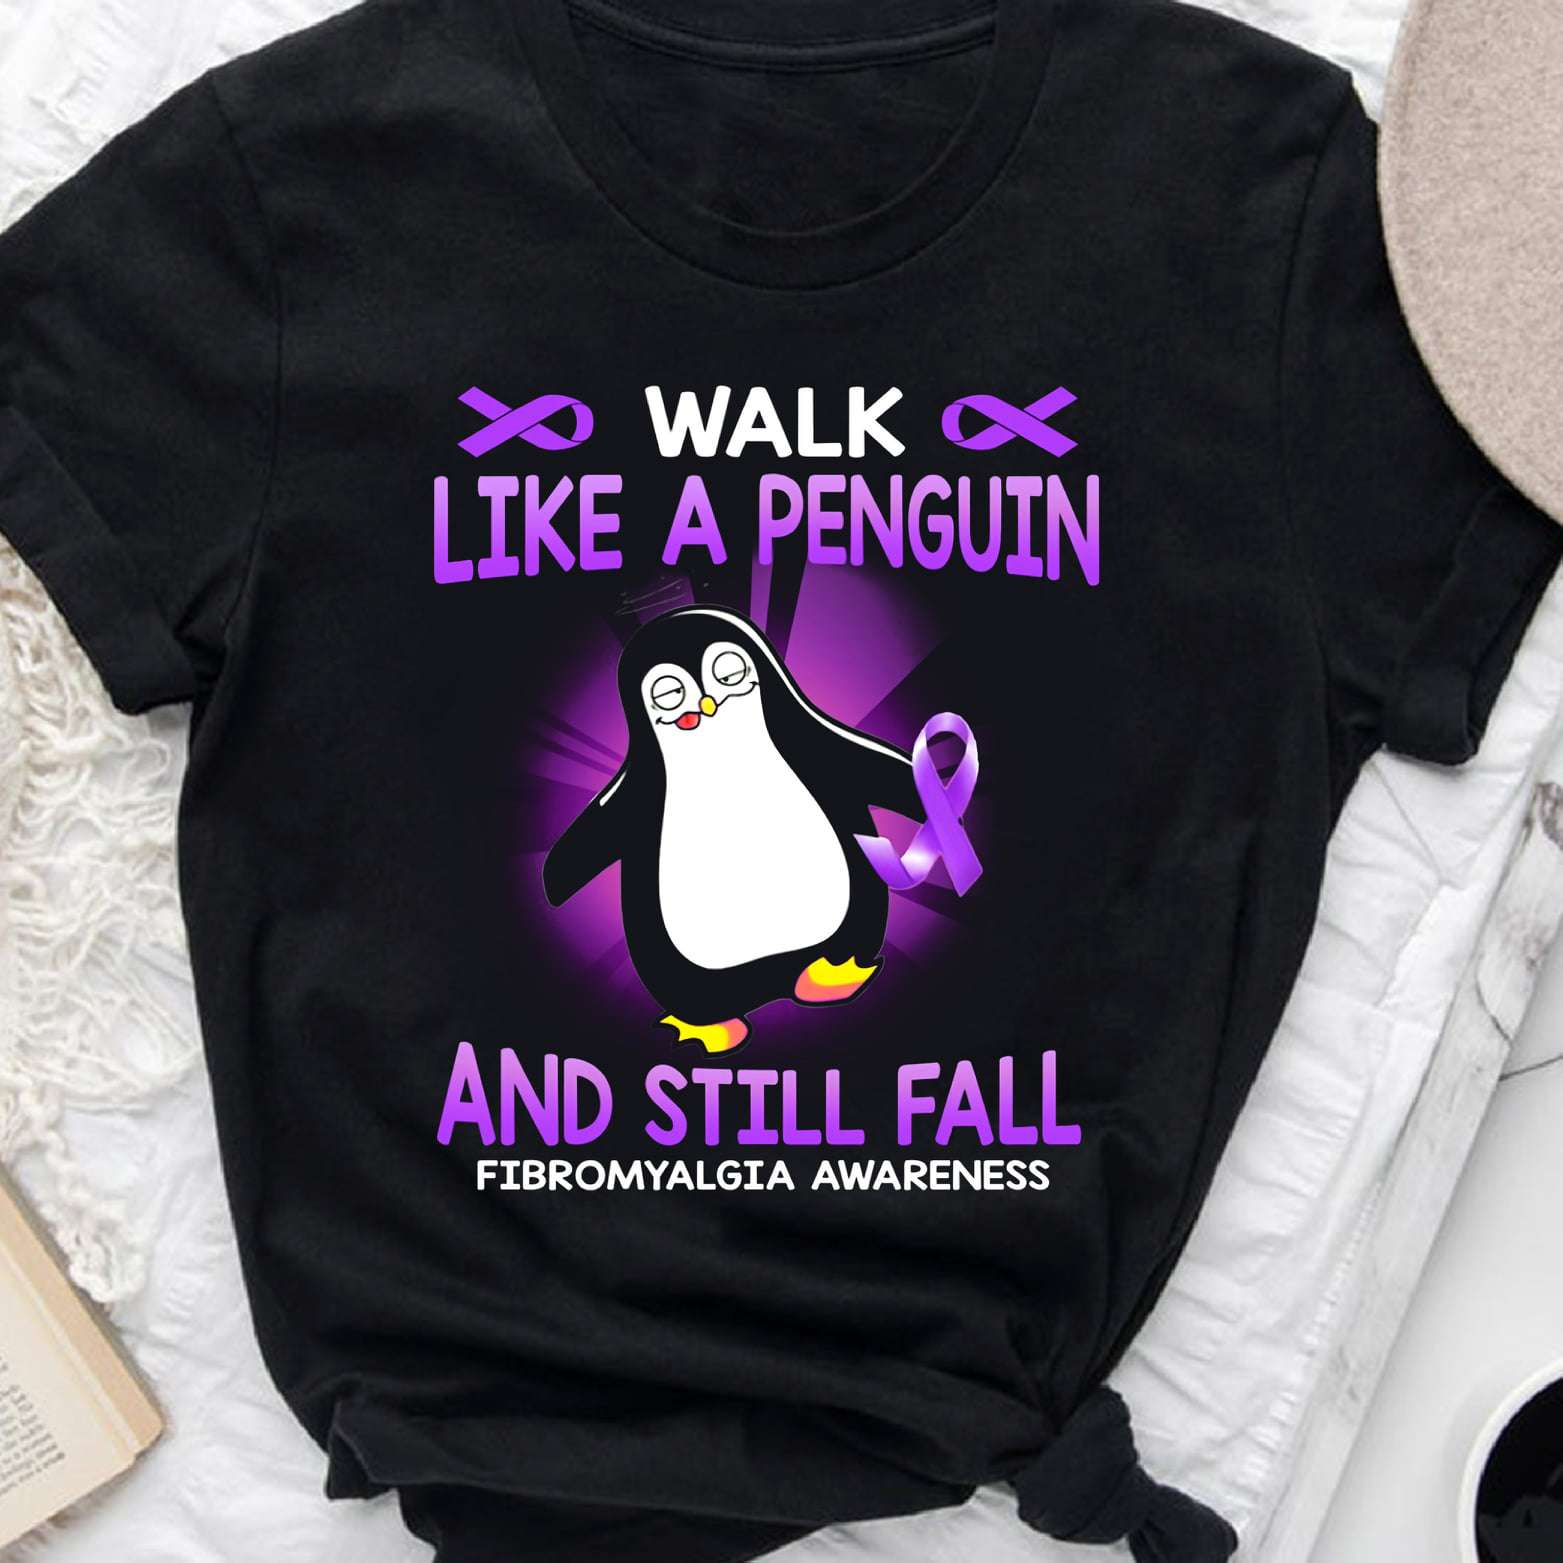 Walk like a penguin and still fall - Fibromyalgia awareness, fibromyalgia penguin